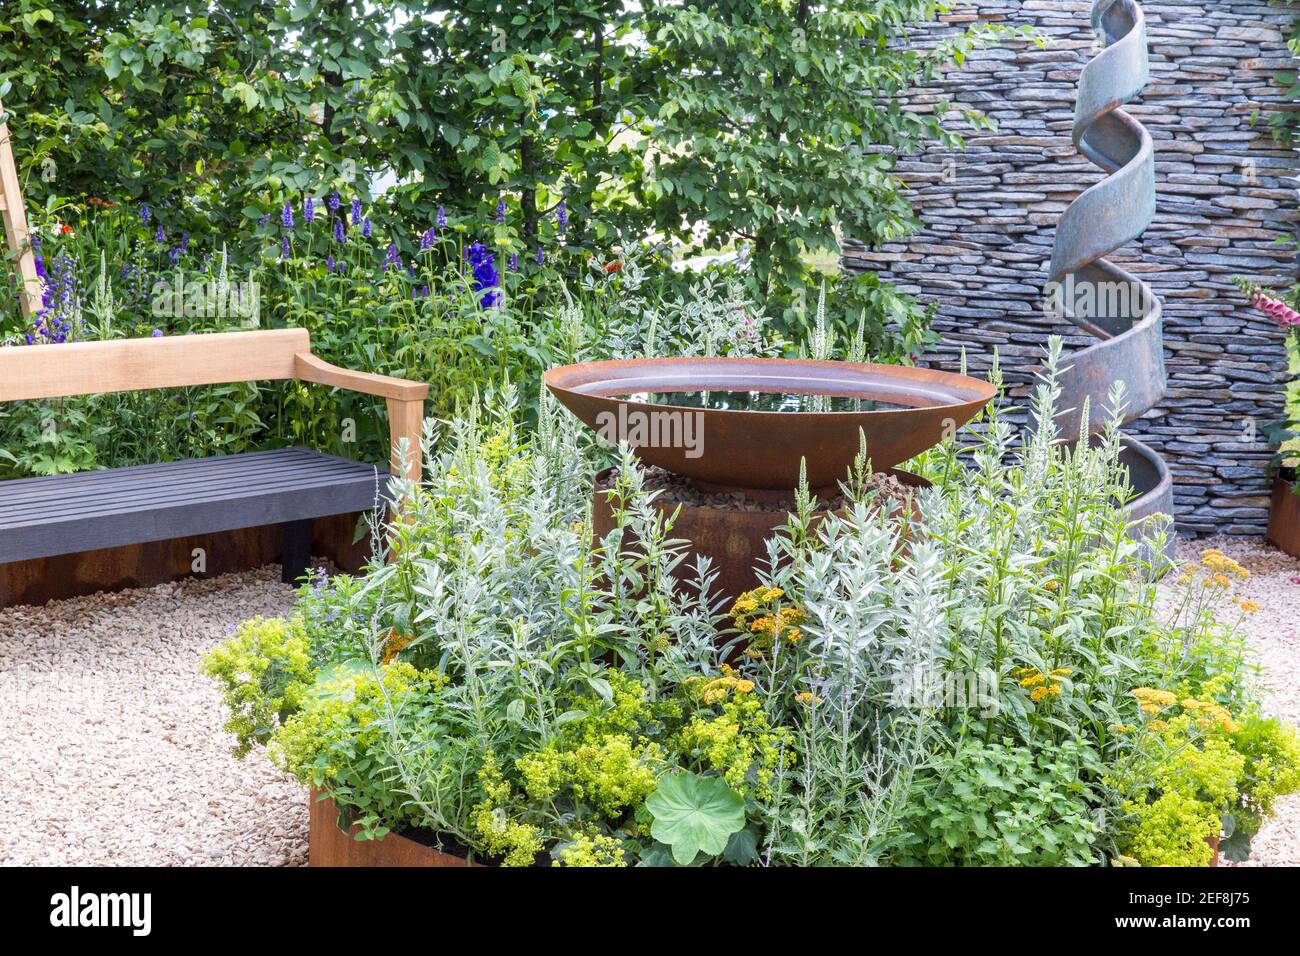 Petit jardin de cour anglaise avec sculpture en spirale - acier corten plan d'eau - haies - chemin en gravier avec banc de jardin Fleurs frontières Angleterre Royaume-Uni Banque D'Images